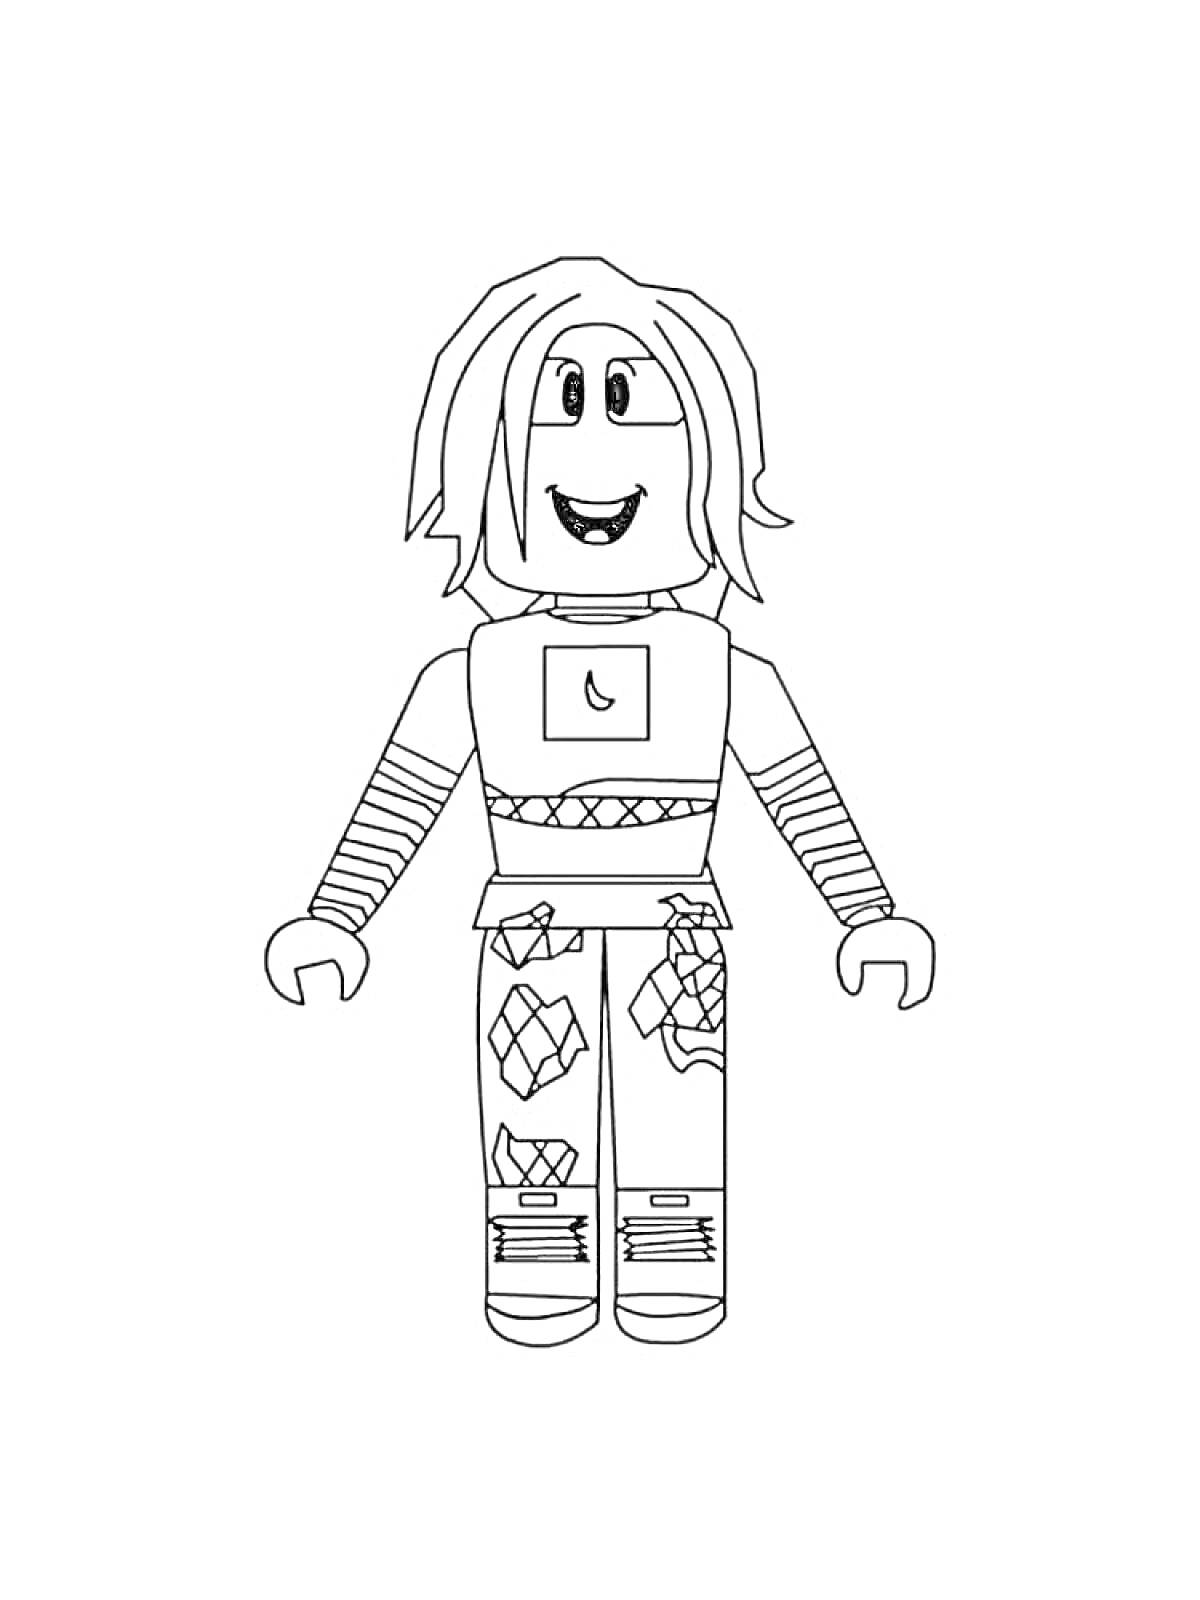 Раскраска Персонаж Roblox с длинными волосами и узорами на одежде